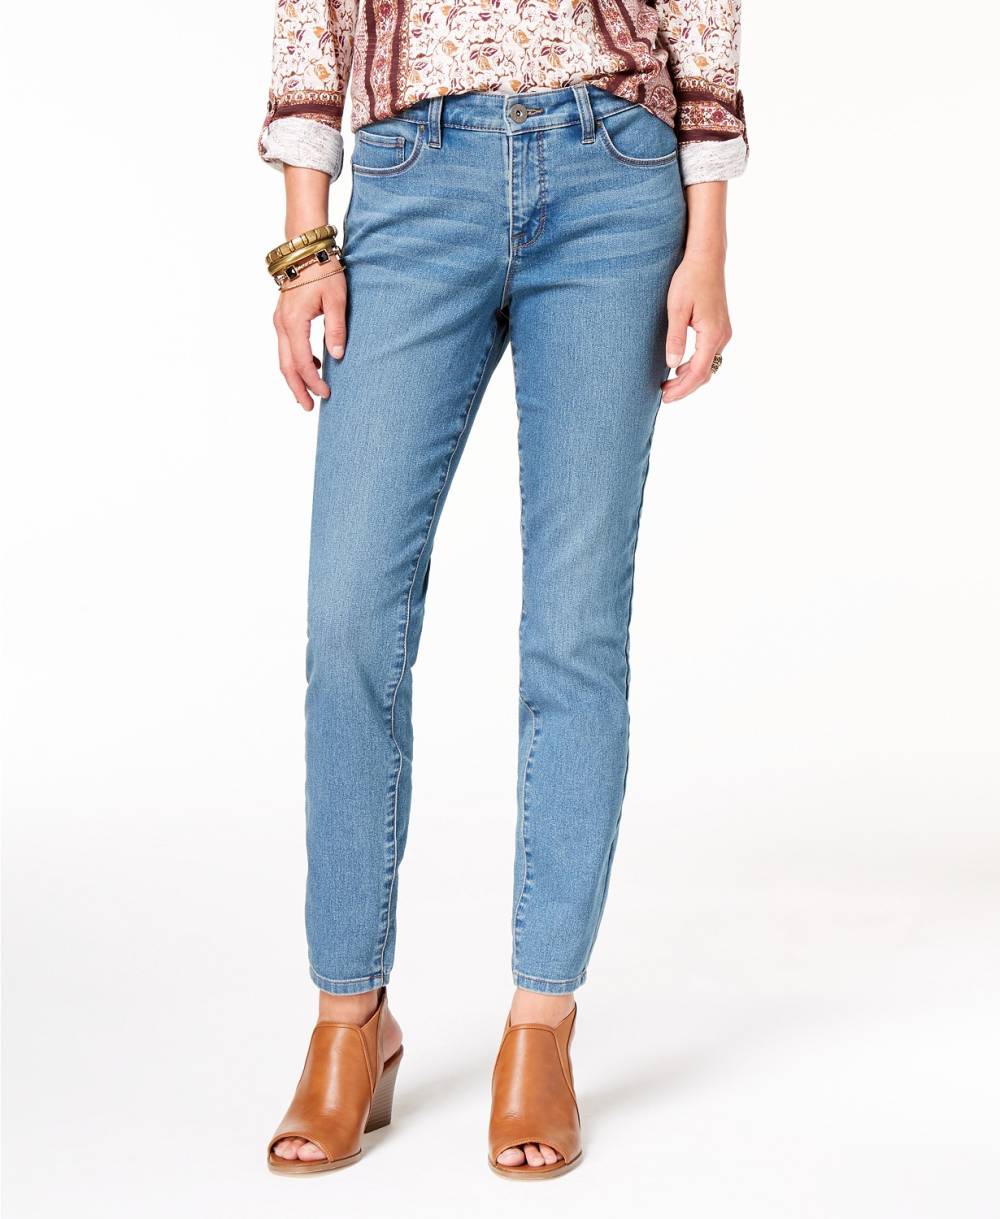 skinny jeans camino